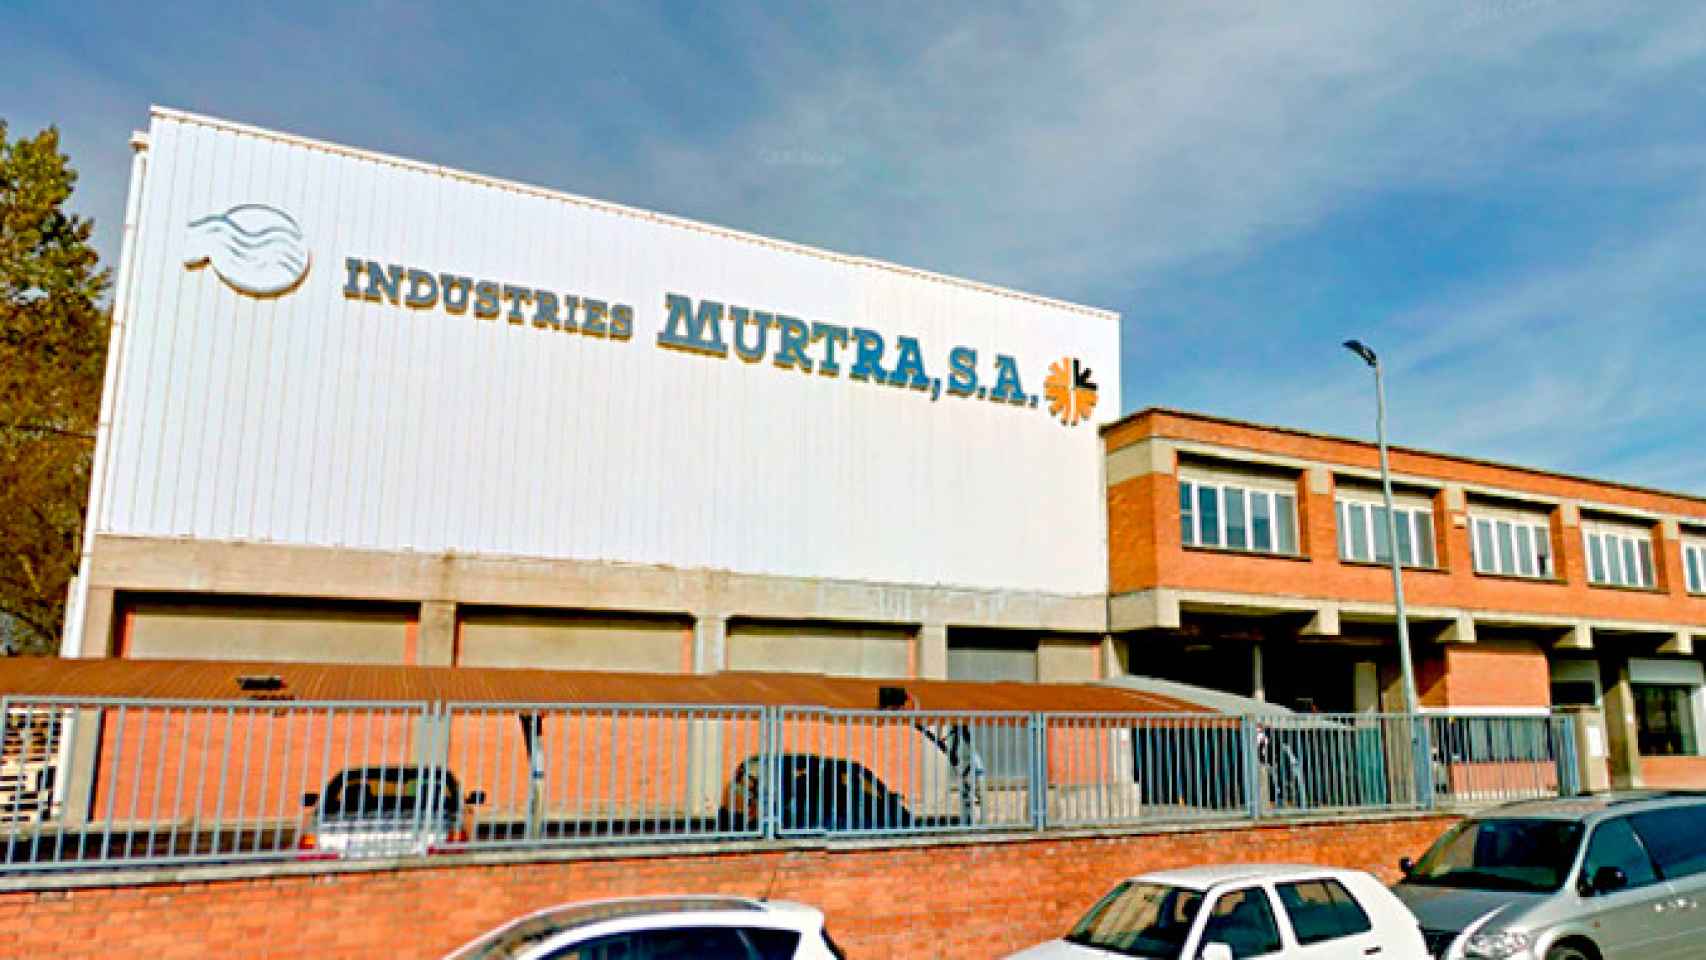 Sede de Industrias Murtra SA en Granollers / CG